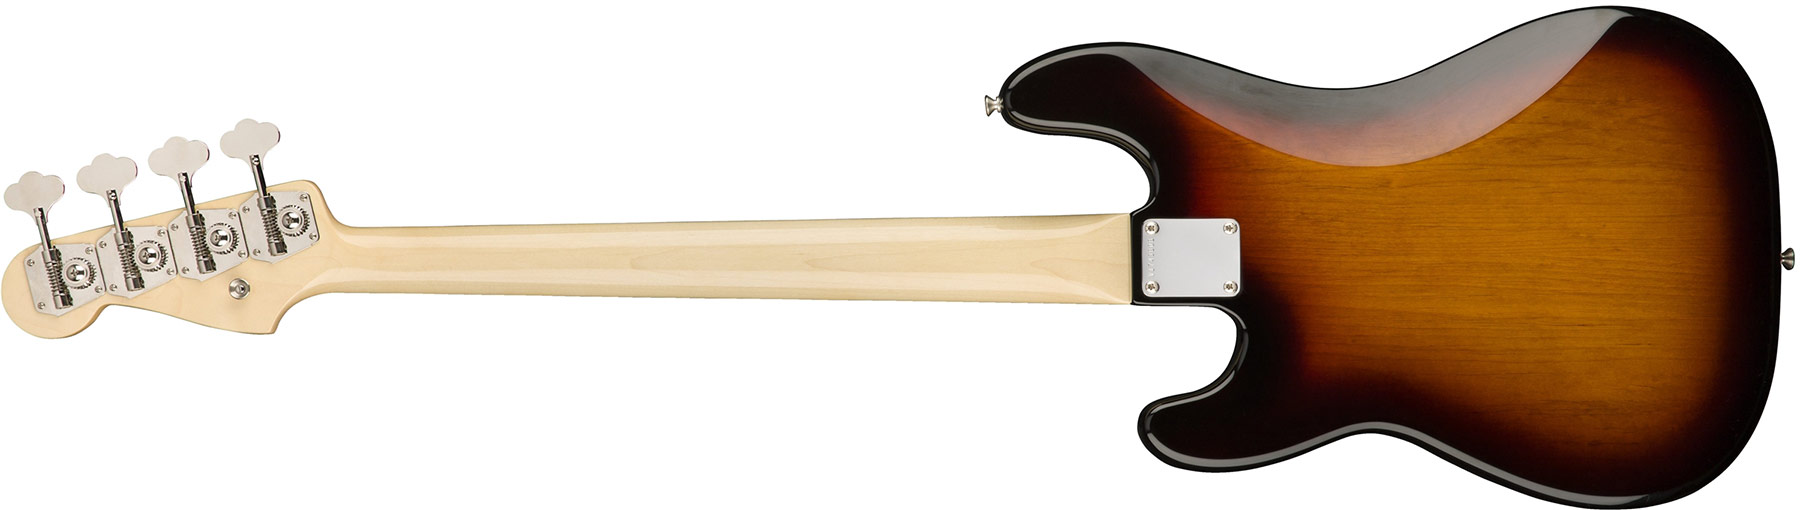 Fender Precision Bass '60s American Original Usa Rw - 3-color Sunburst - Basse Électrique Solid Body - Variation 3